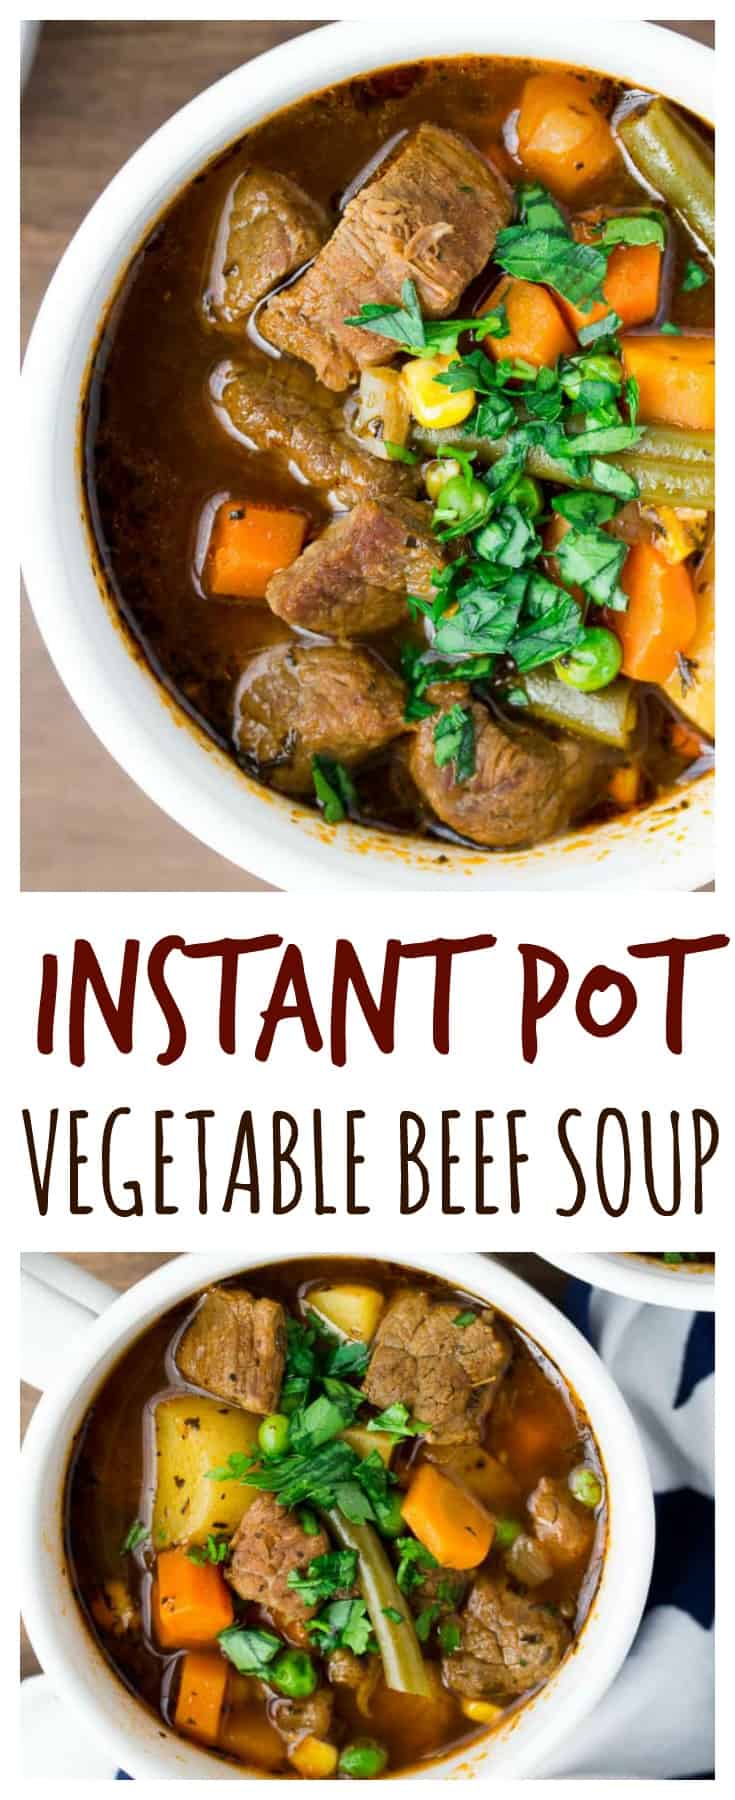 Instant Pot Vegetable Beef Soup - Delicious Little Bites